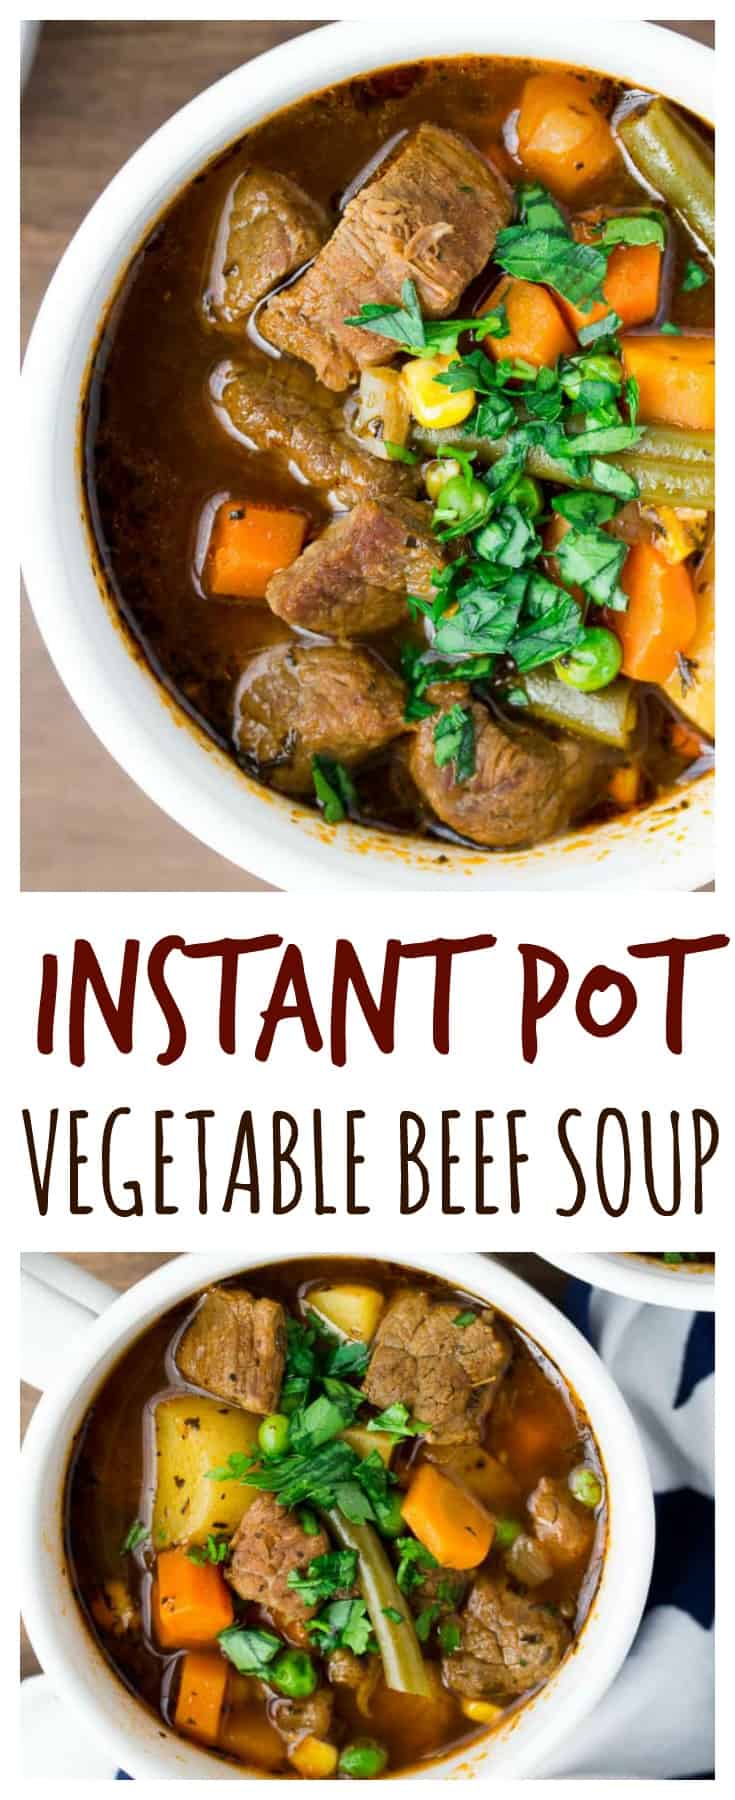 Instant Pot Vegetable Beef Soup - Delicious Little Bites